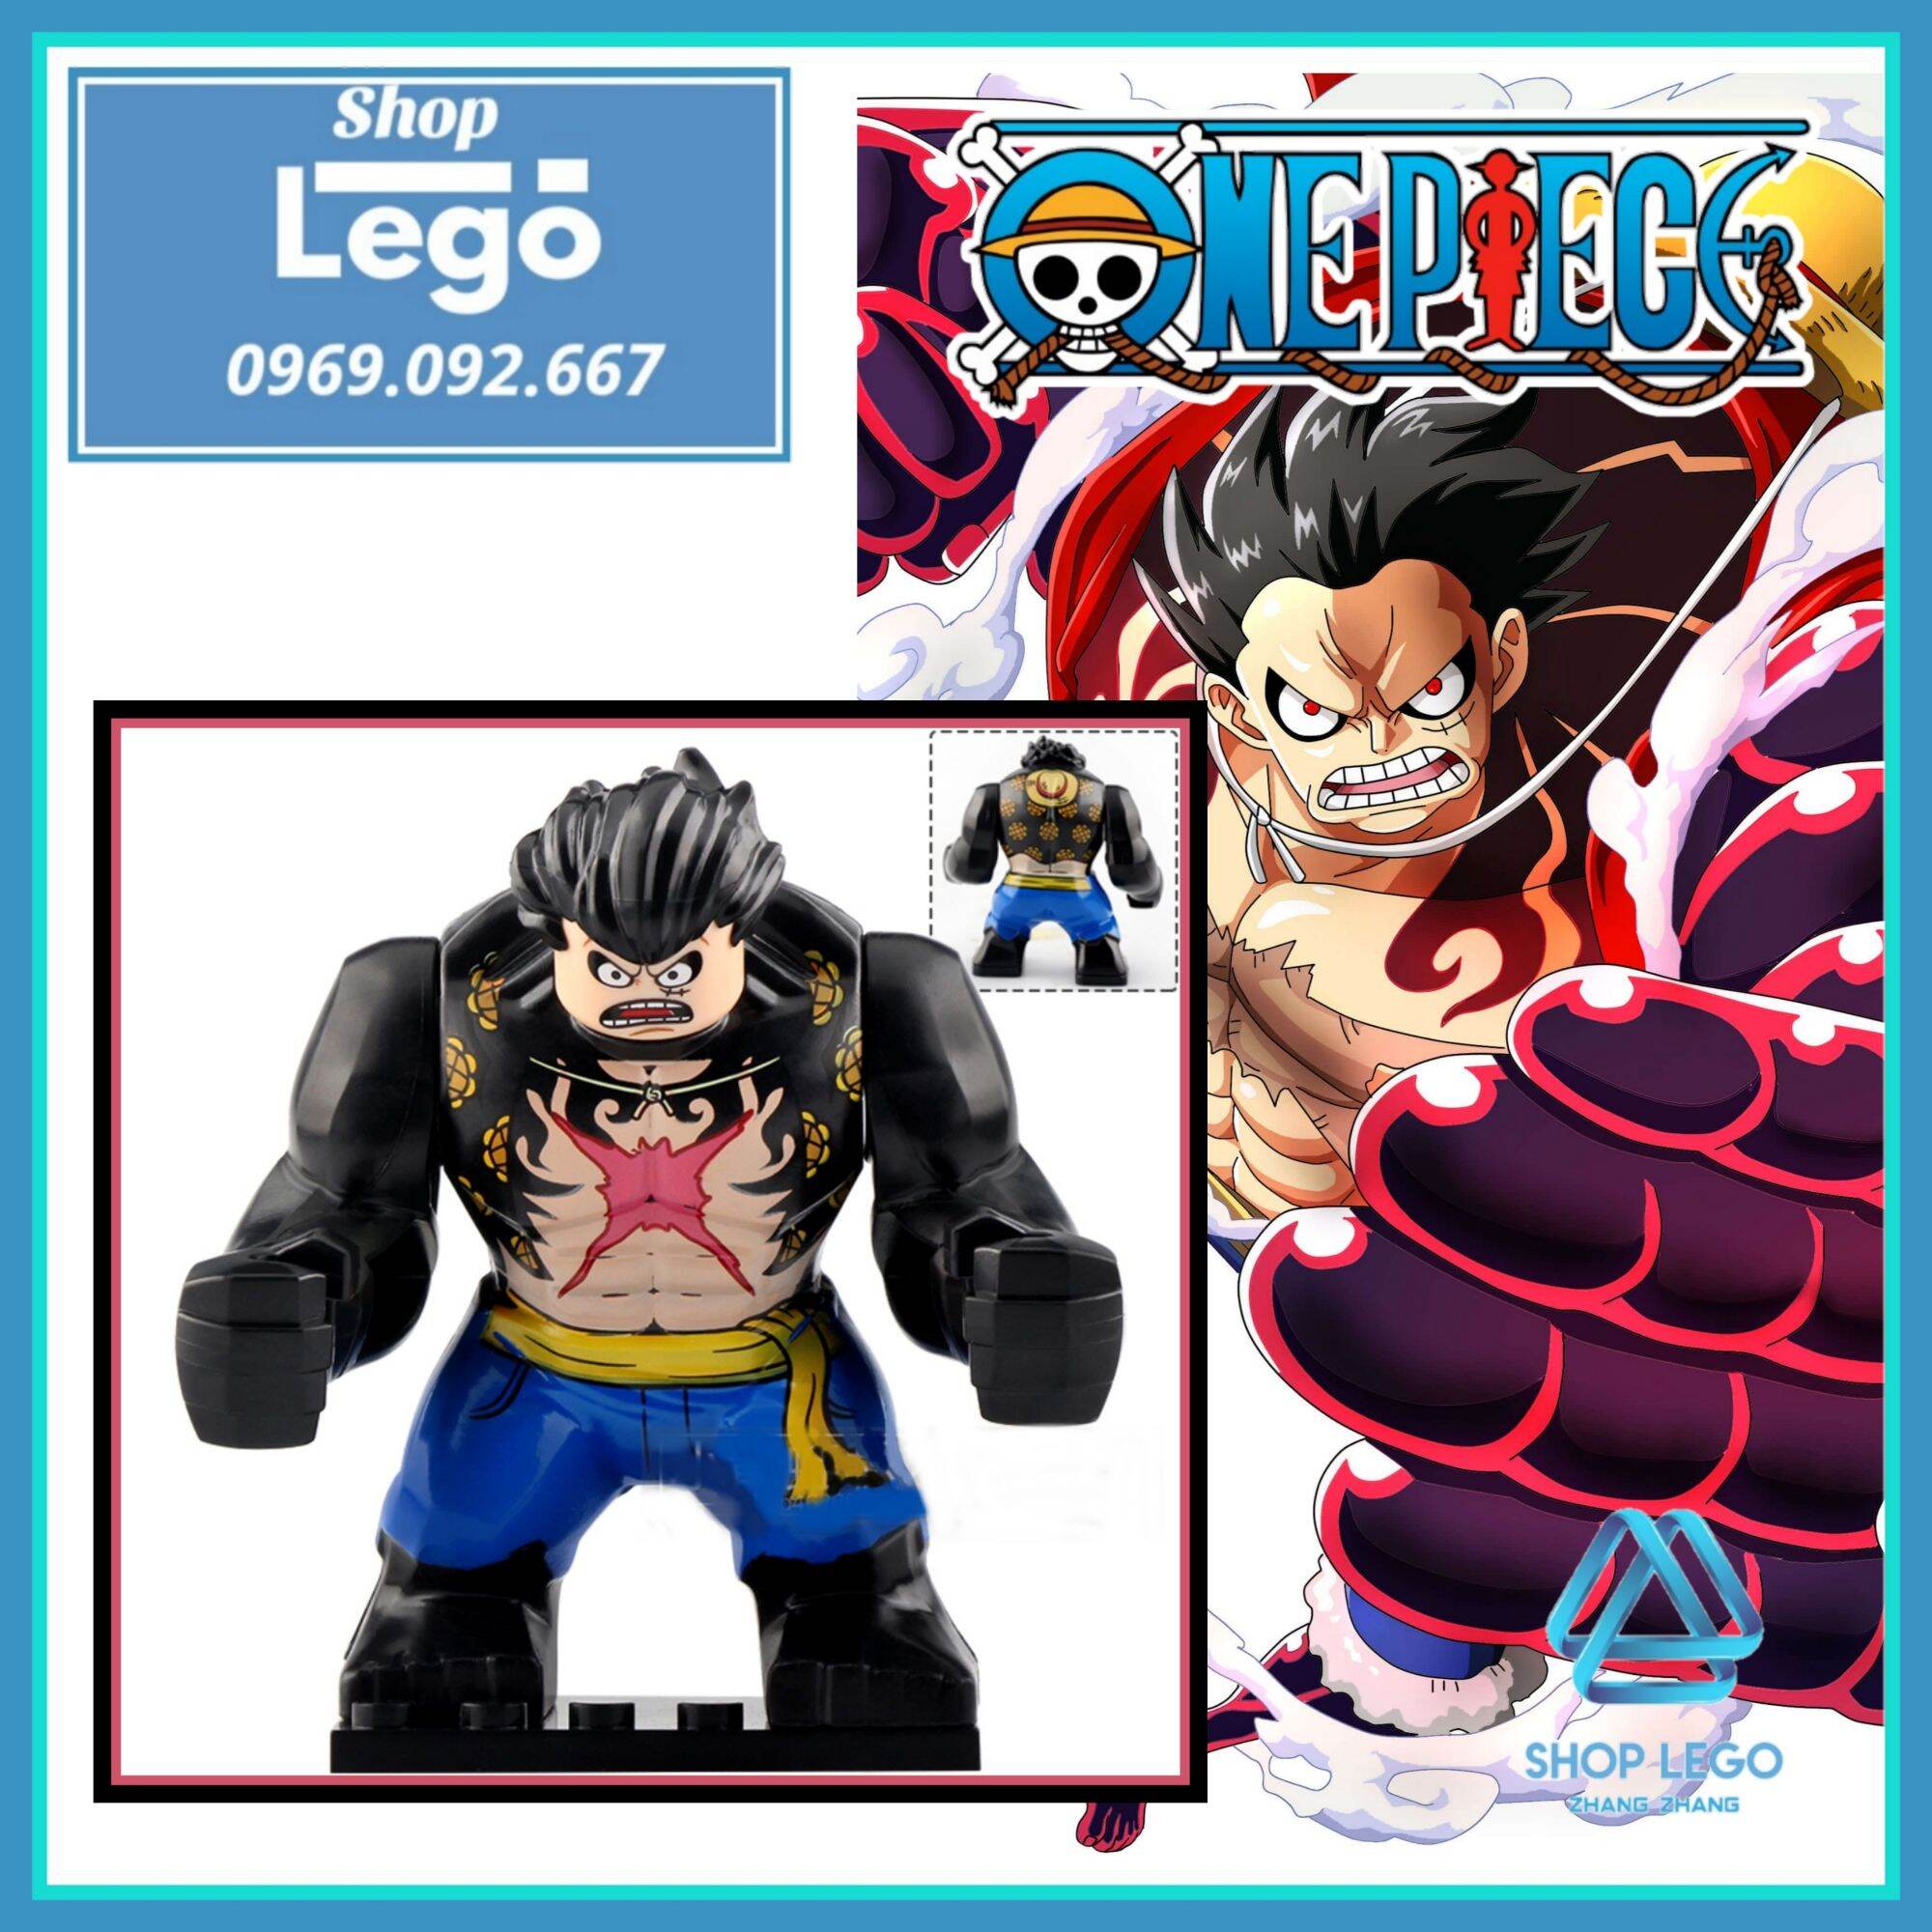 Freeship Max] Xếp Hình Luffy Gear 4 Boundman Đảo Hải Tặc Trong One Piece  Mới Nhất Lego Minifigures Koruit Xp235 [Shop Đồ Chơi Zhang Zhang] |  Lazada.Vn